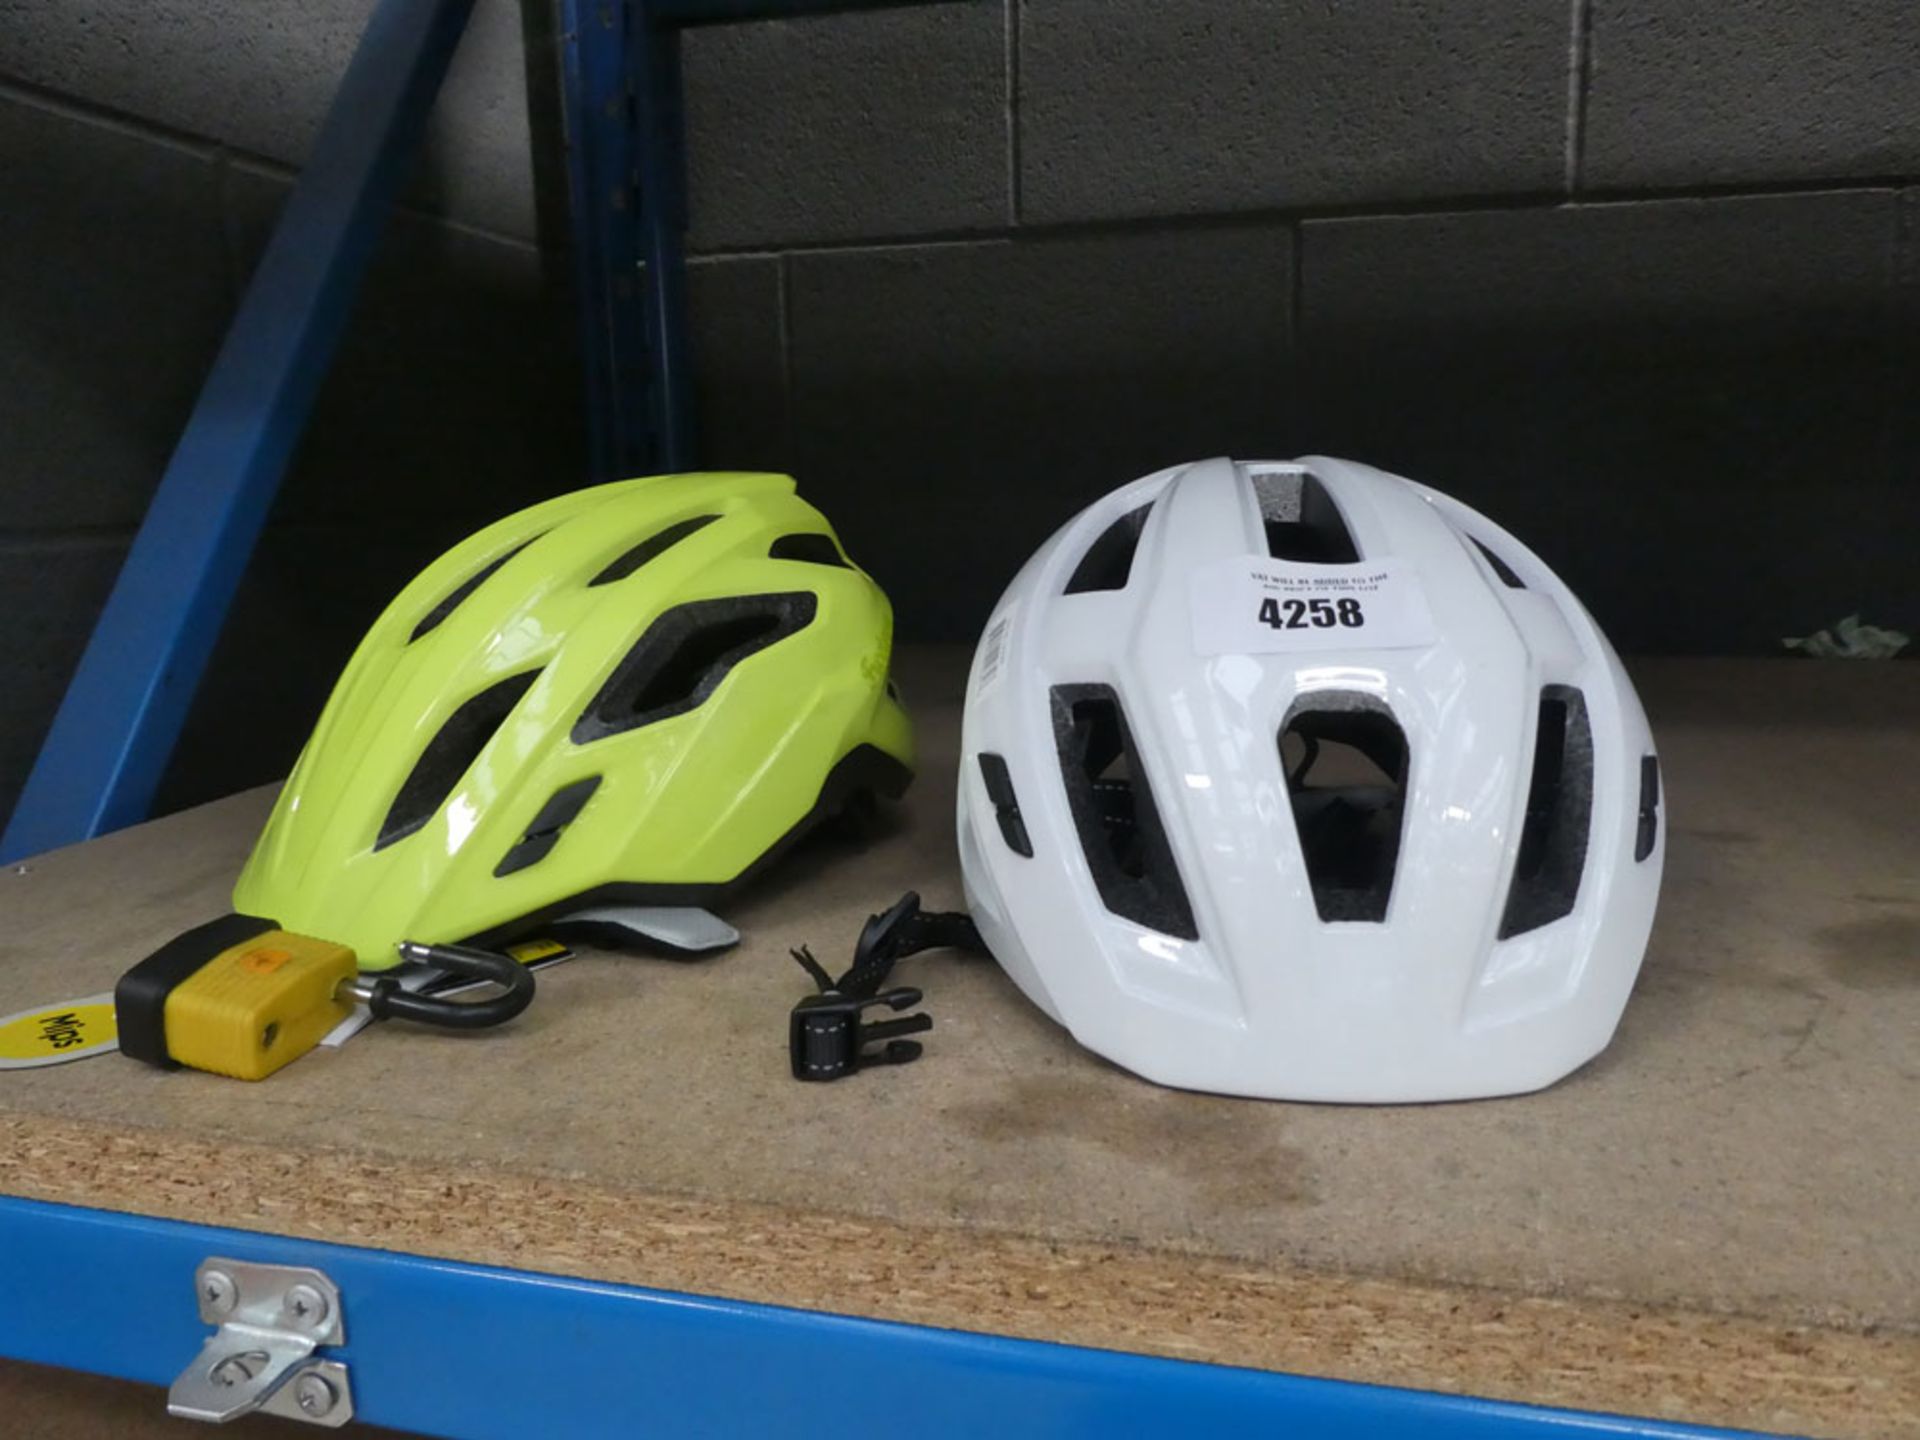 2 cycle helmets